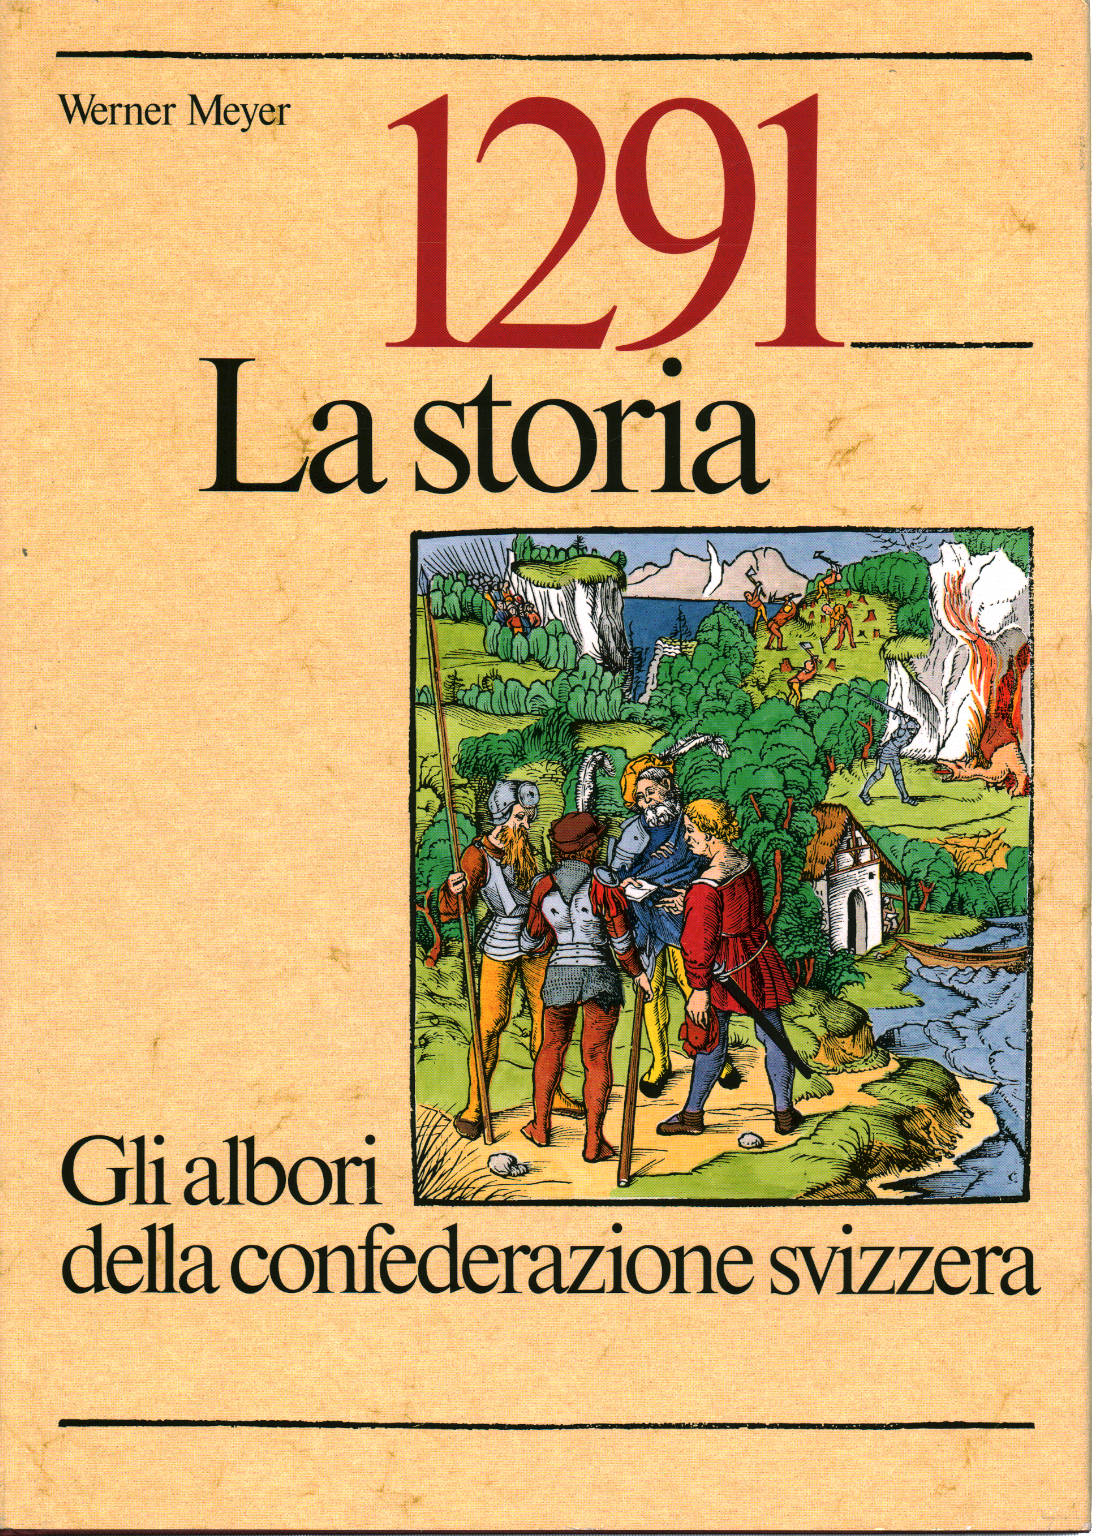 1291- Historia, Werner Meyer